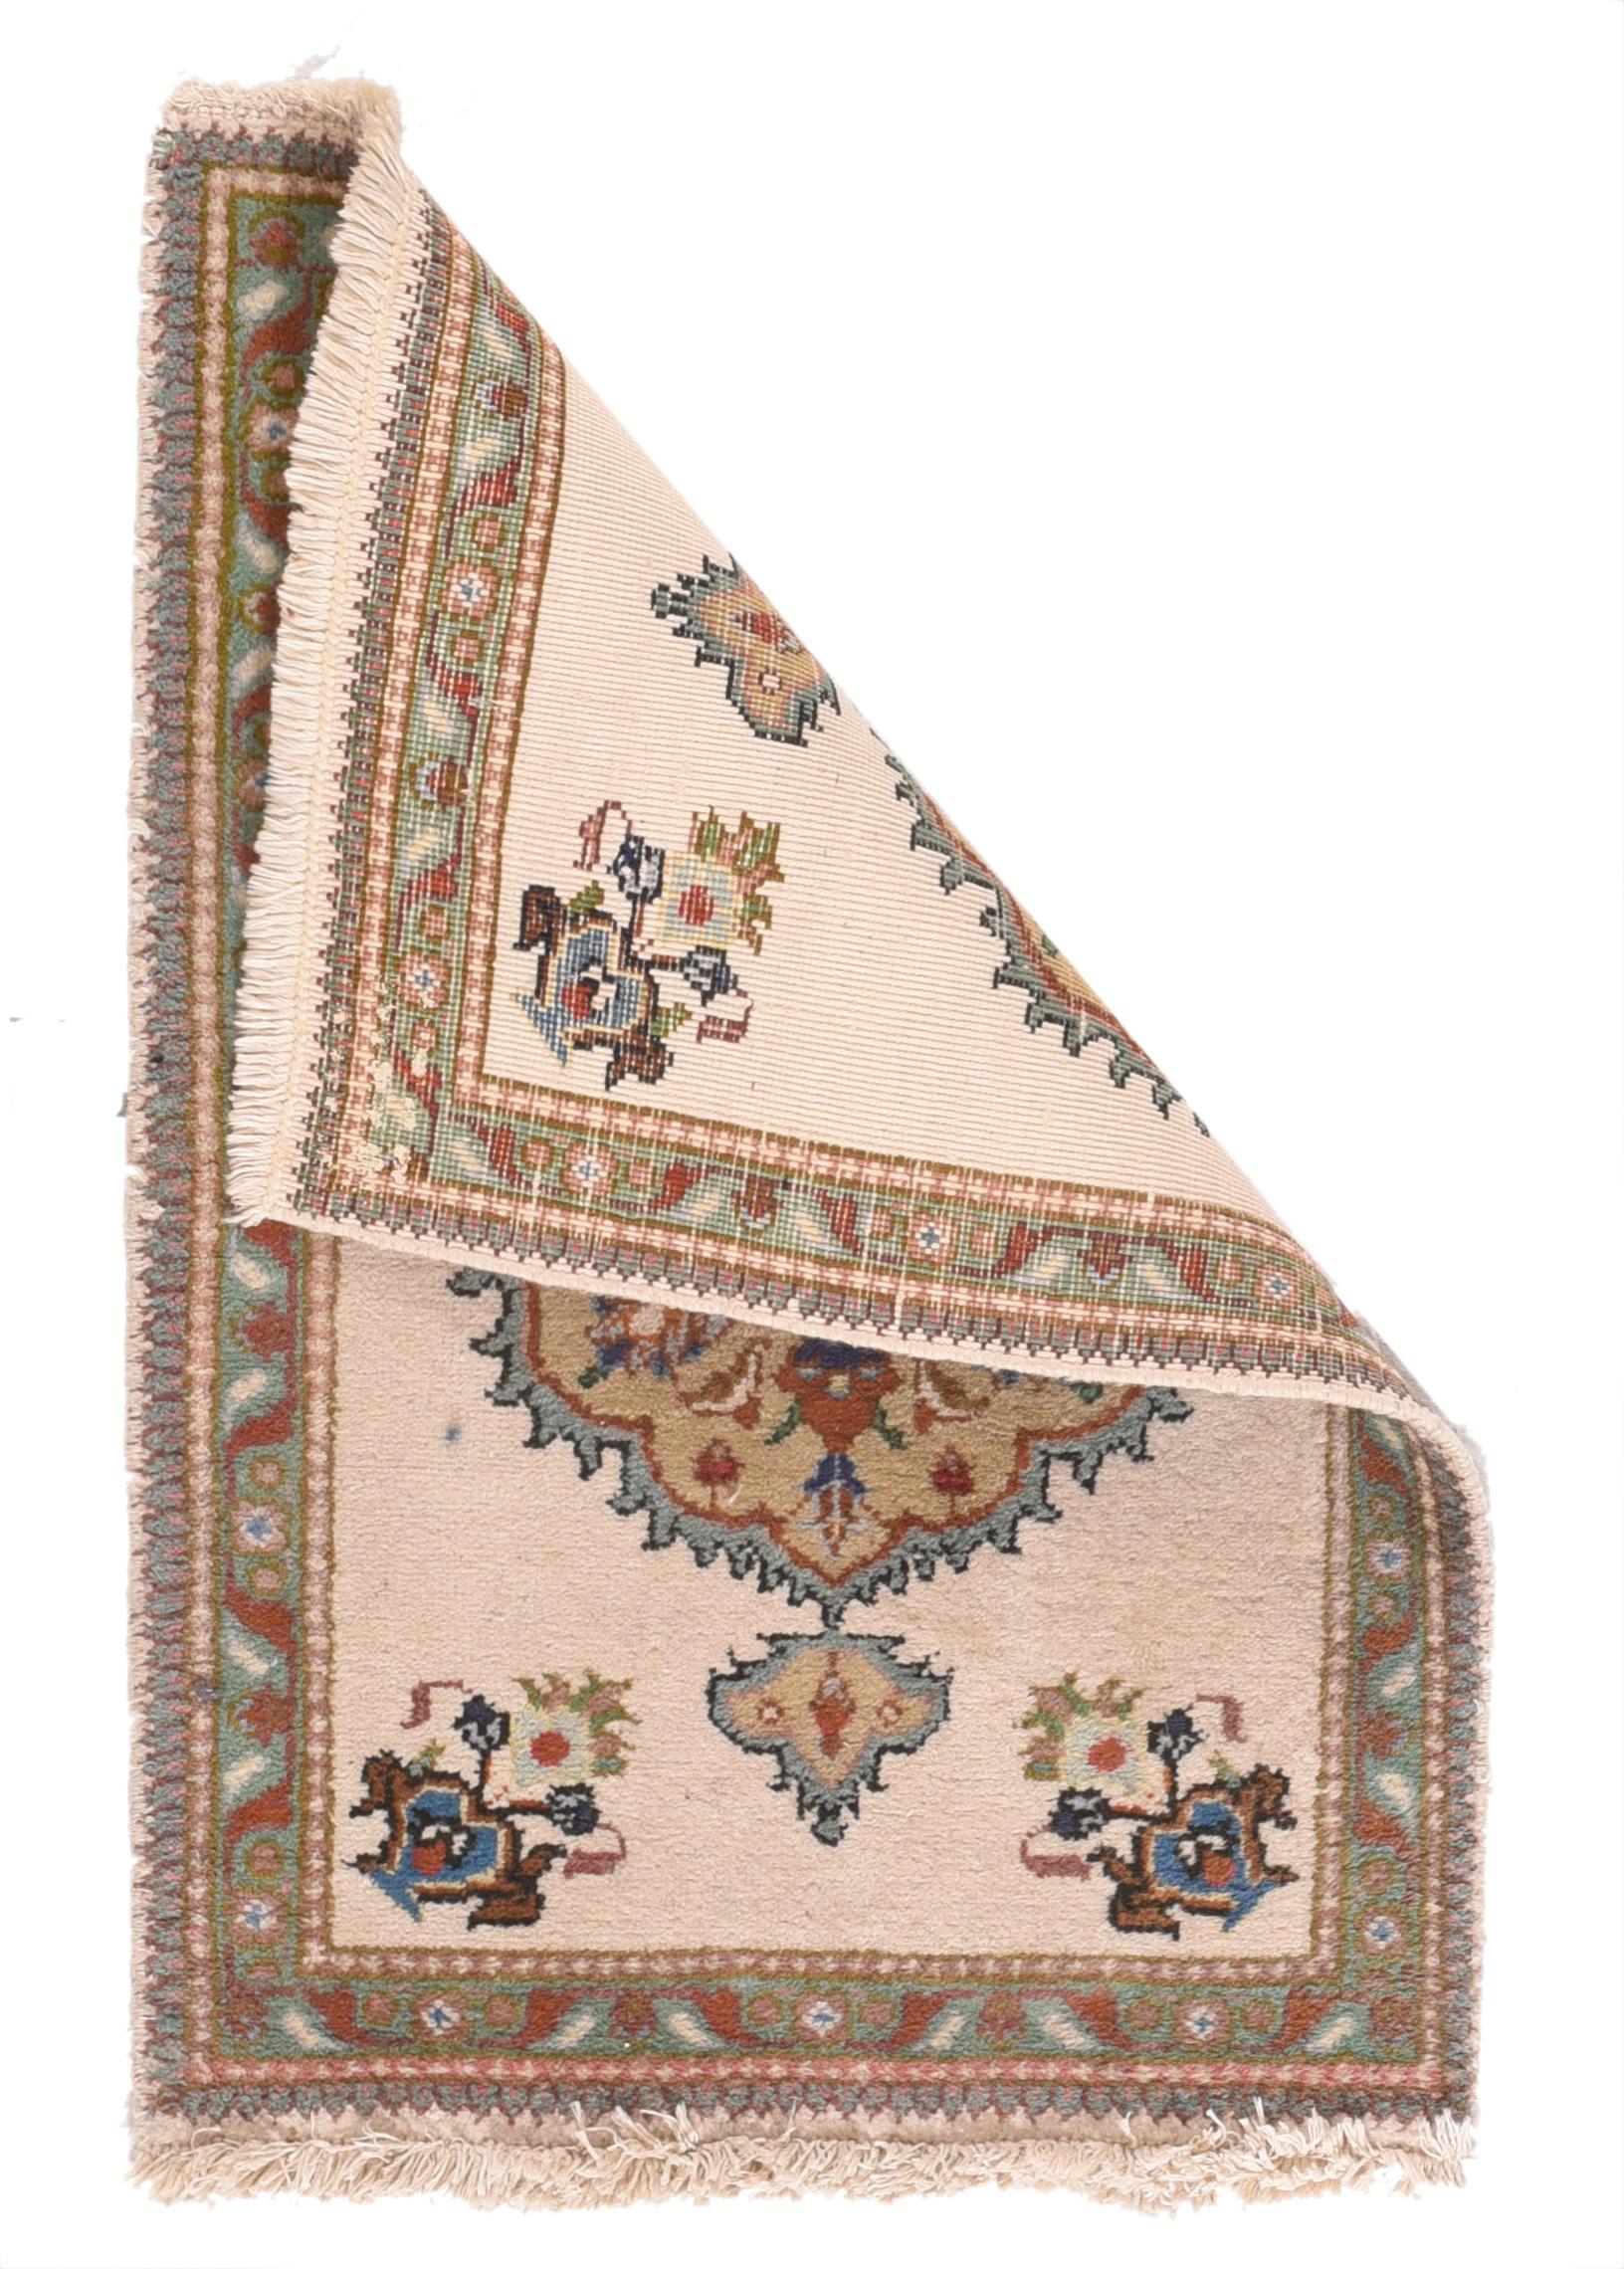 Vintage Tabriz Teppich 2' x 3'. Dieser gut gewebte Teppich im urbanen Stil zeigt ein kühnes Strohpalmettenmedaillon, eingefasst von grünen Akanthoiden mit Stacheln, mit kleinen Anhängern en suite und blauen schrägen Vasen in den Ecken, alles auf